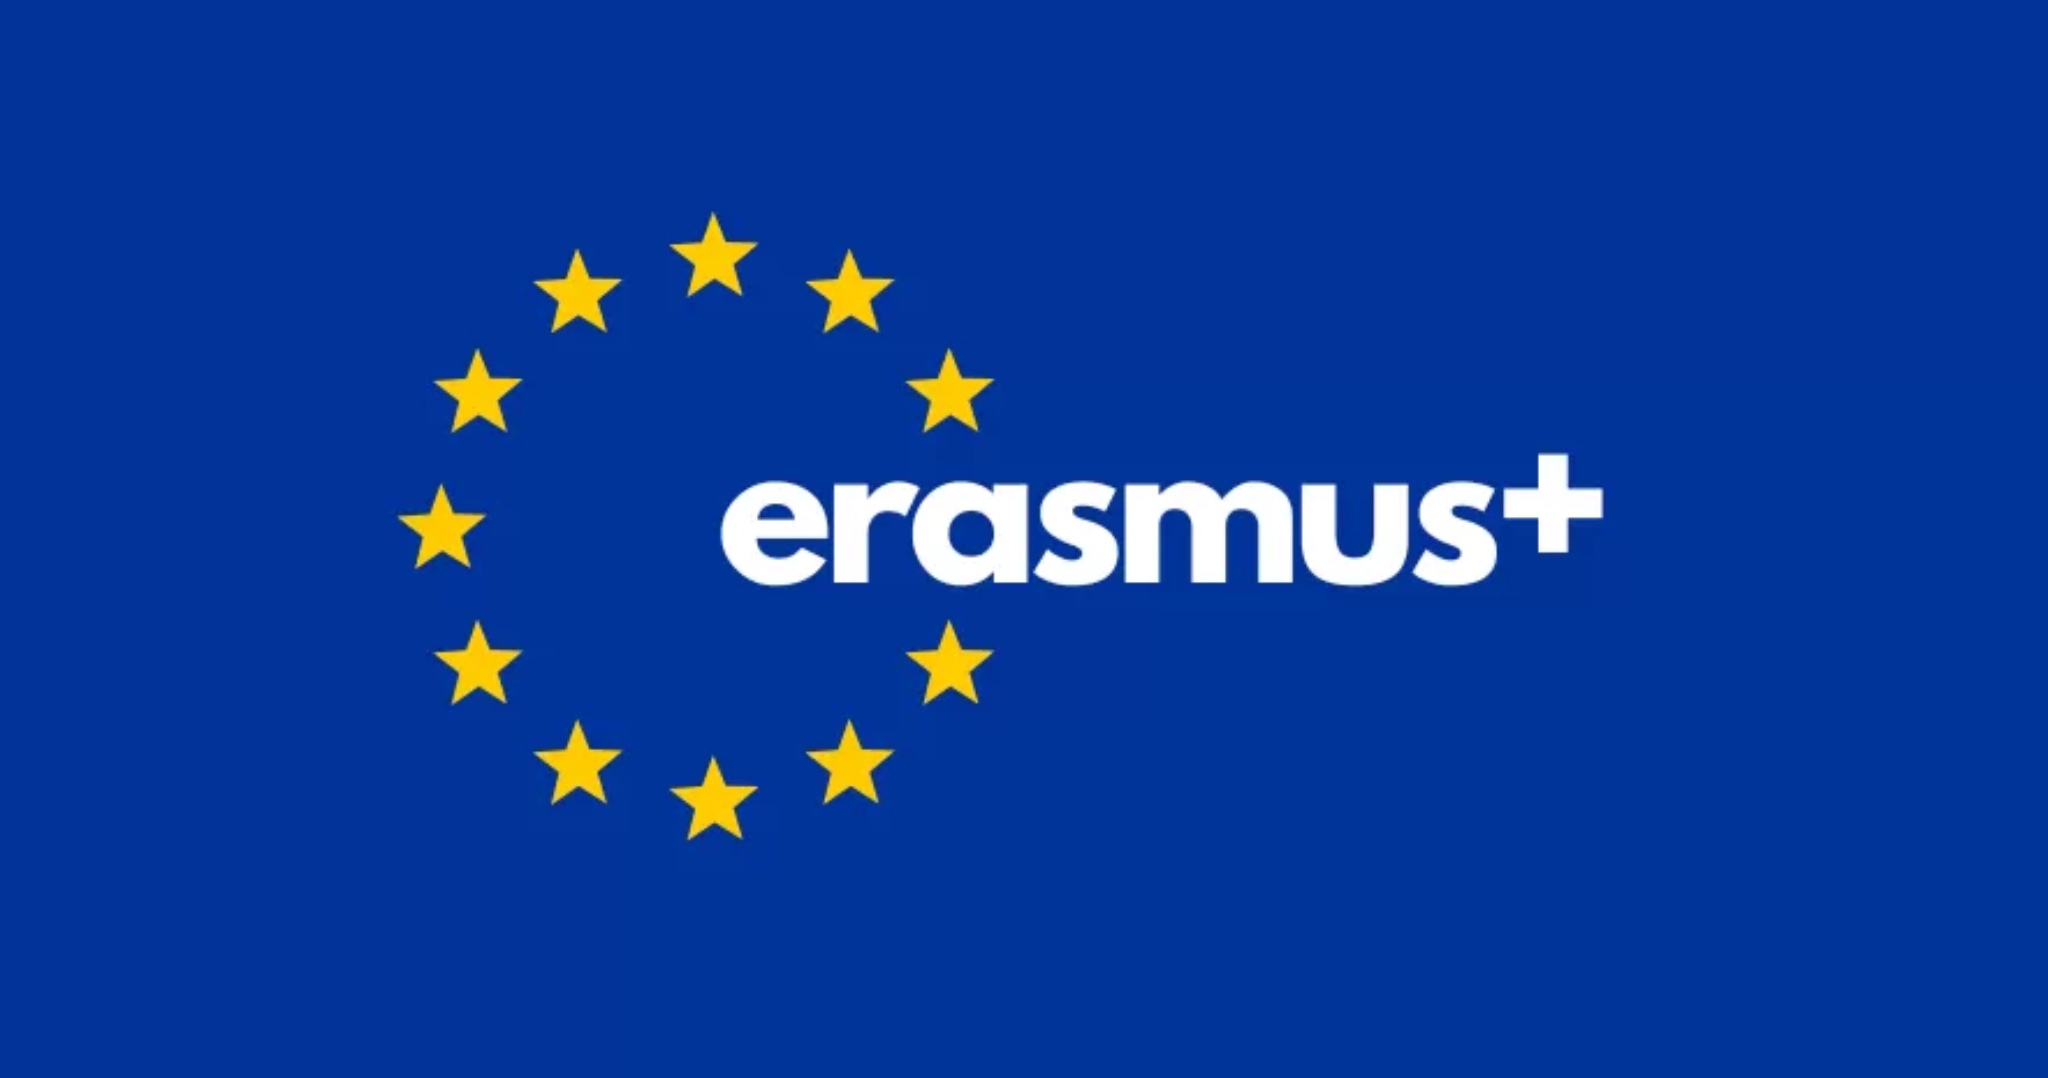 Mandátna správa pre účely účasti na projekte v rámci programu Erasmus+